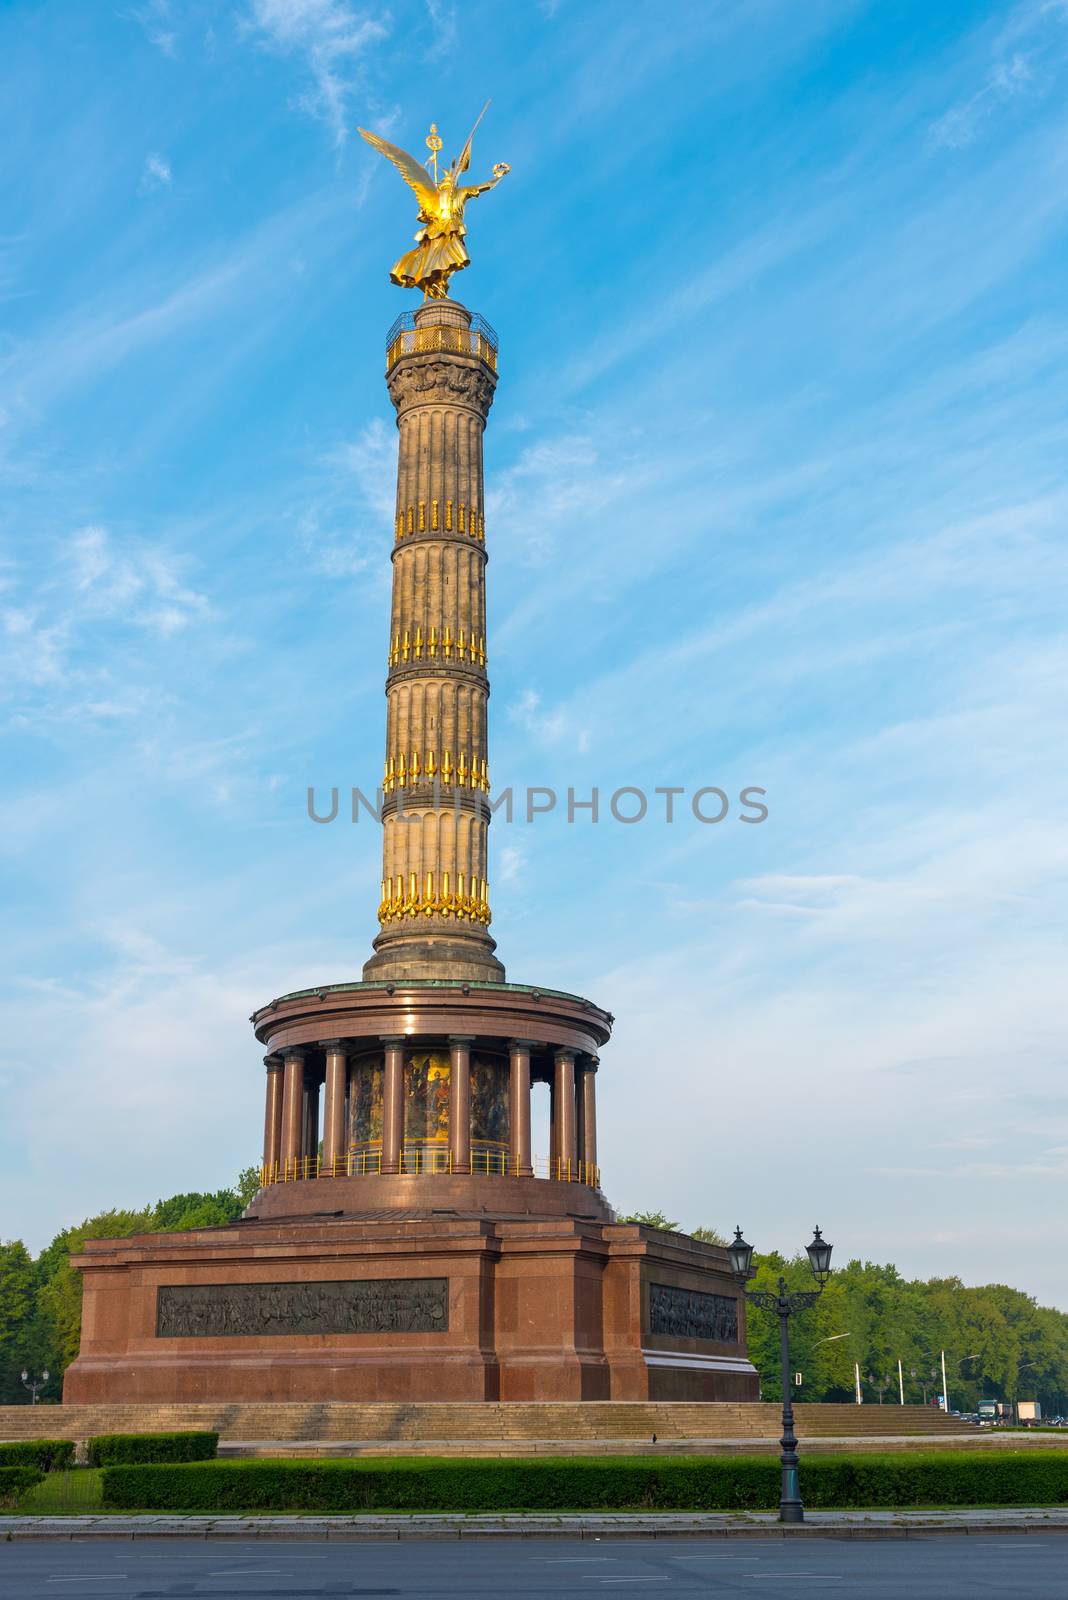 The Victory Column in Berlin by elxeneize